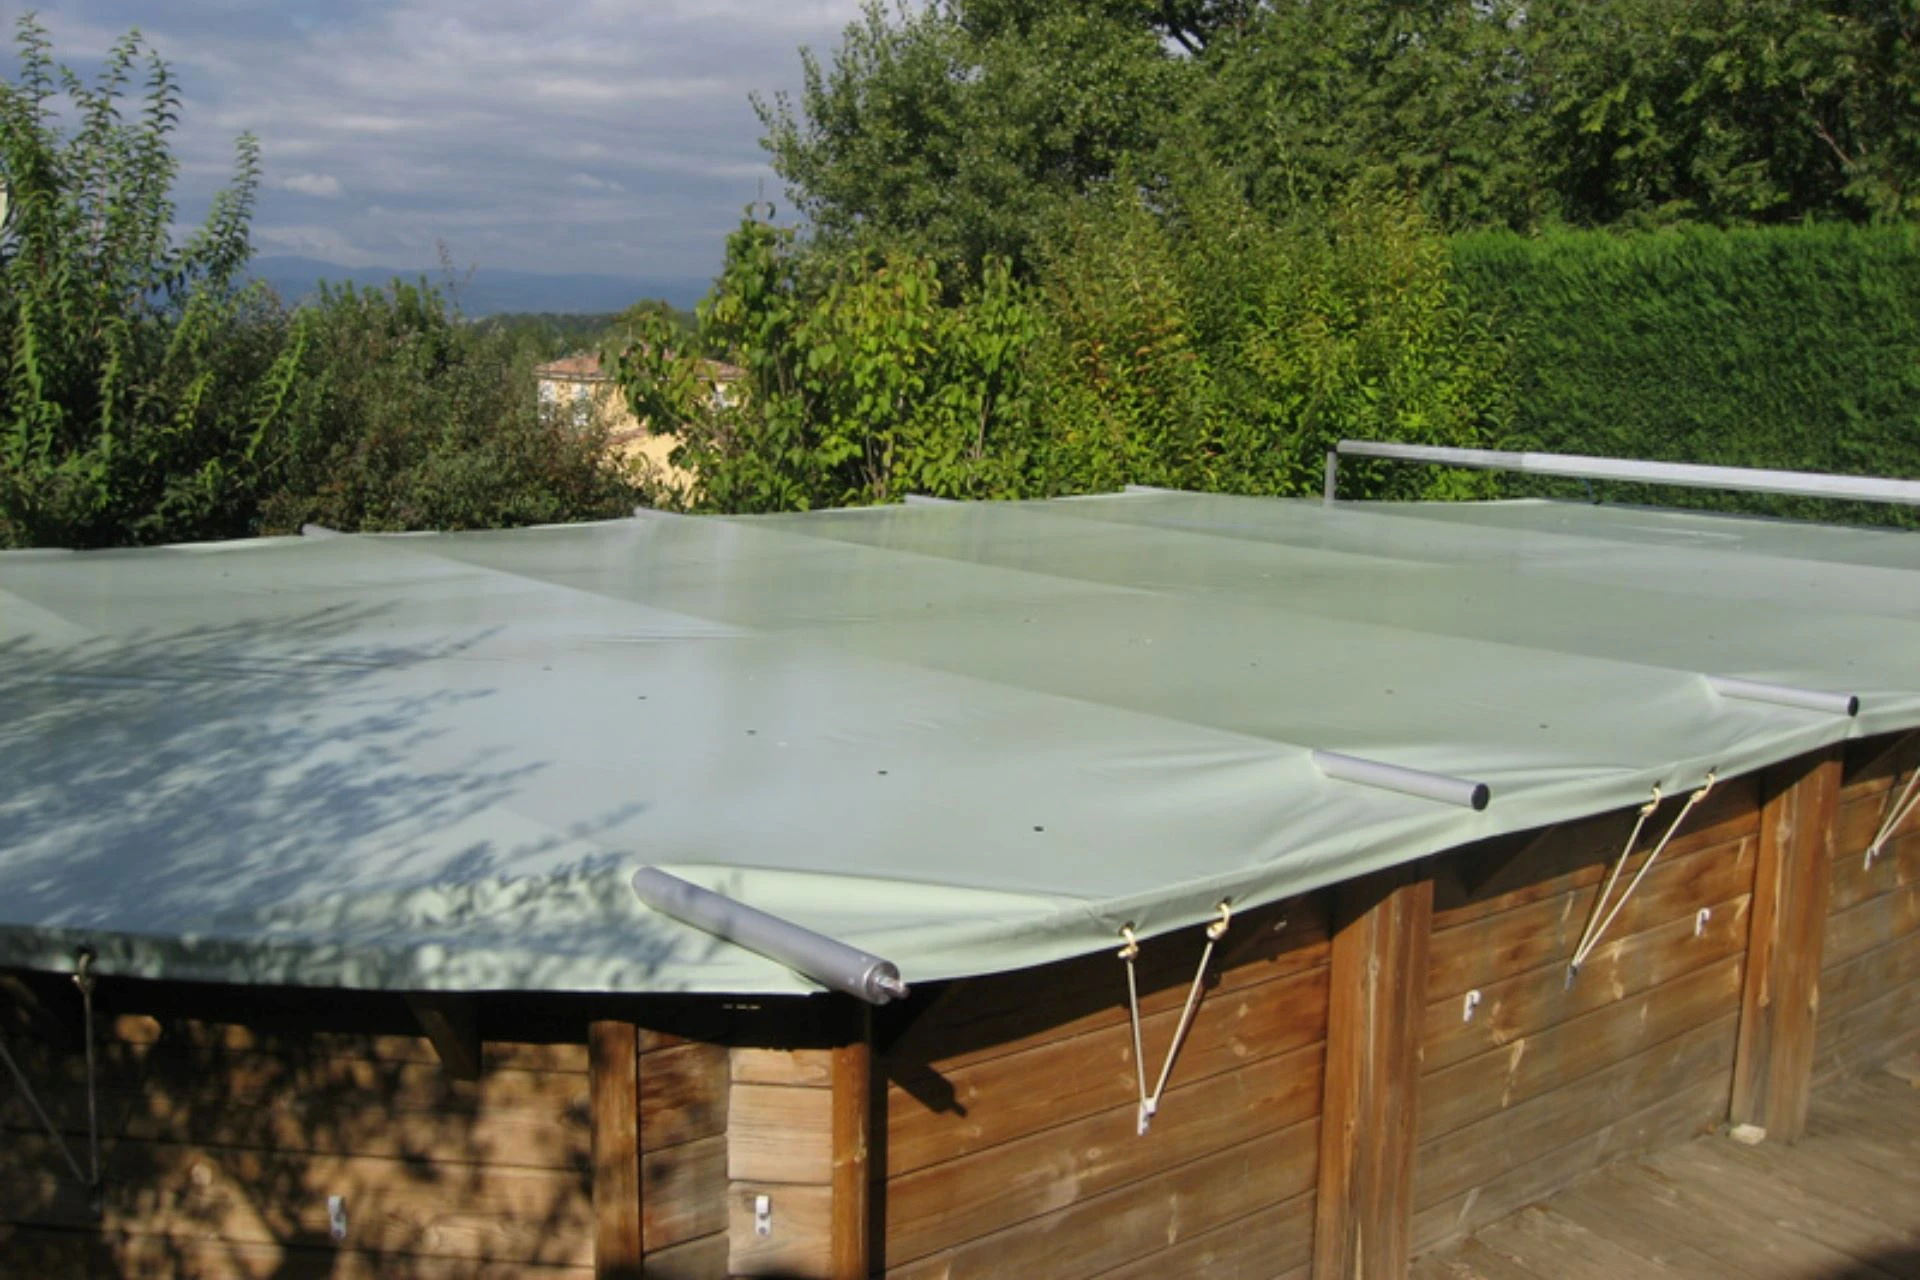 Couvertures hivernage piscine en PVC, fabrication sur mesure - Spa & Piscine